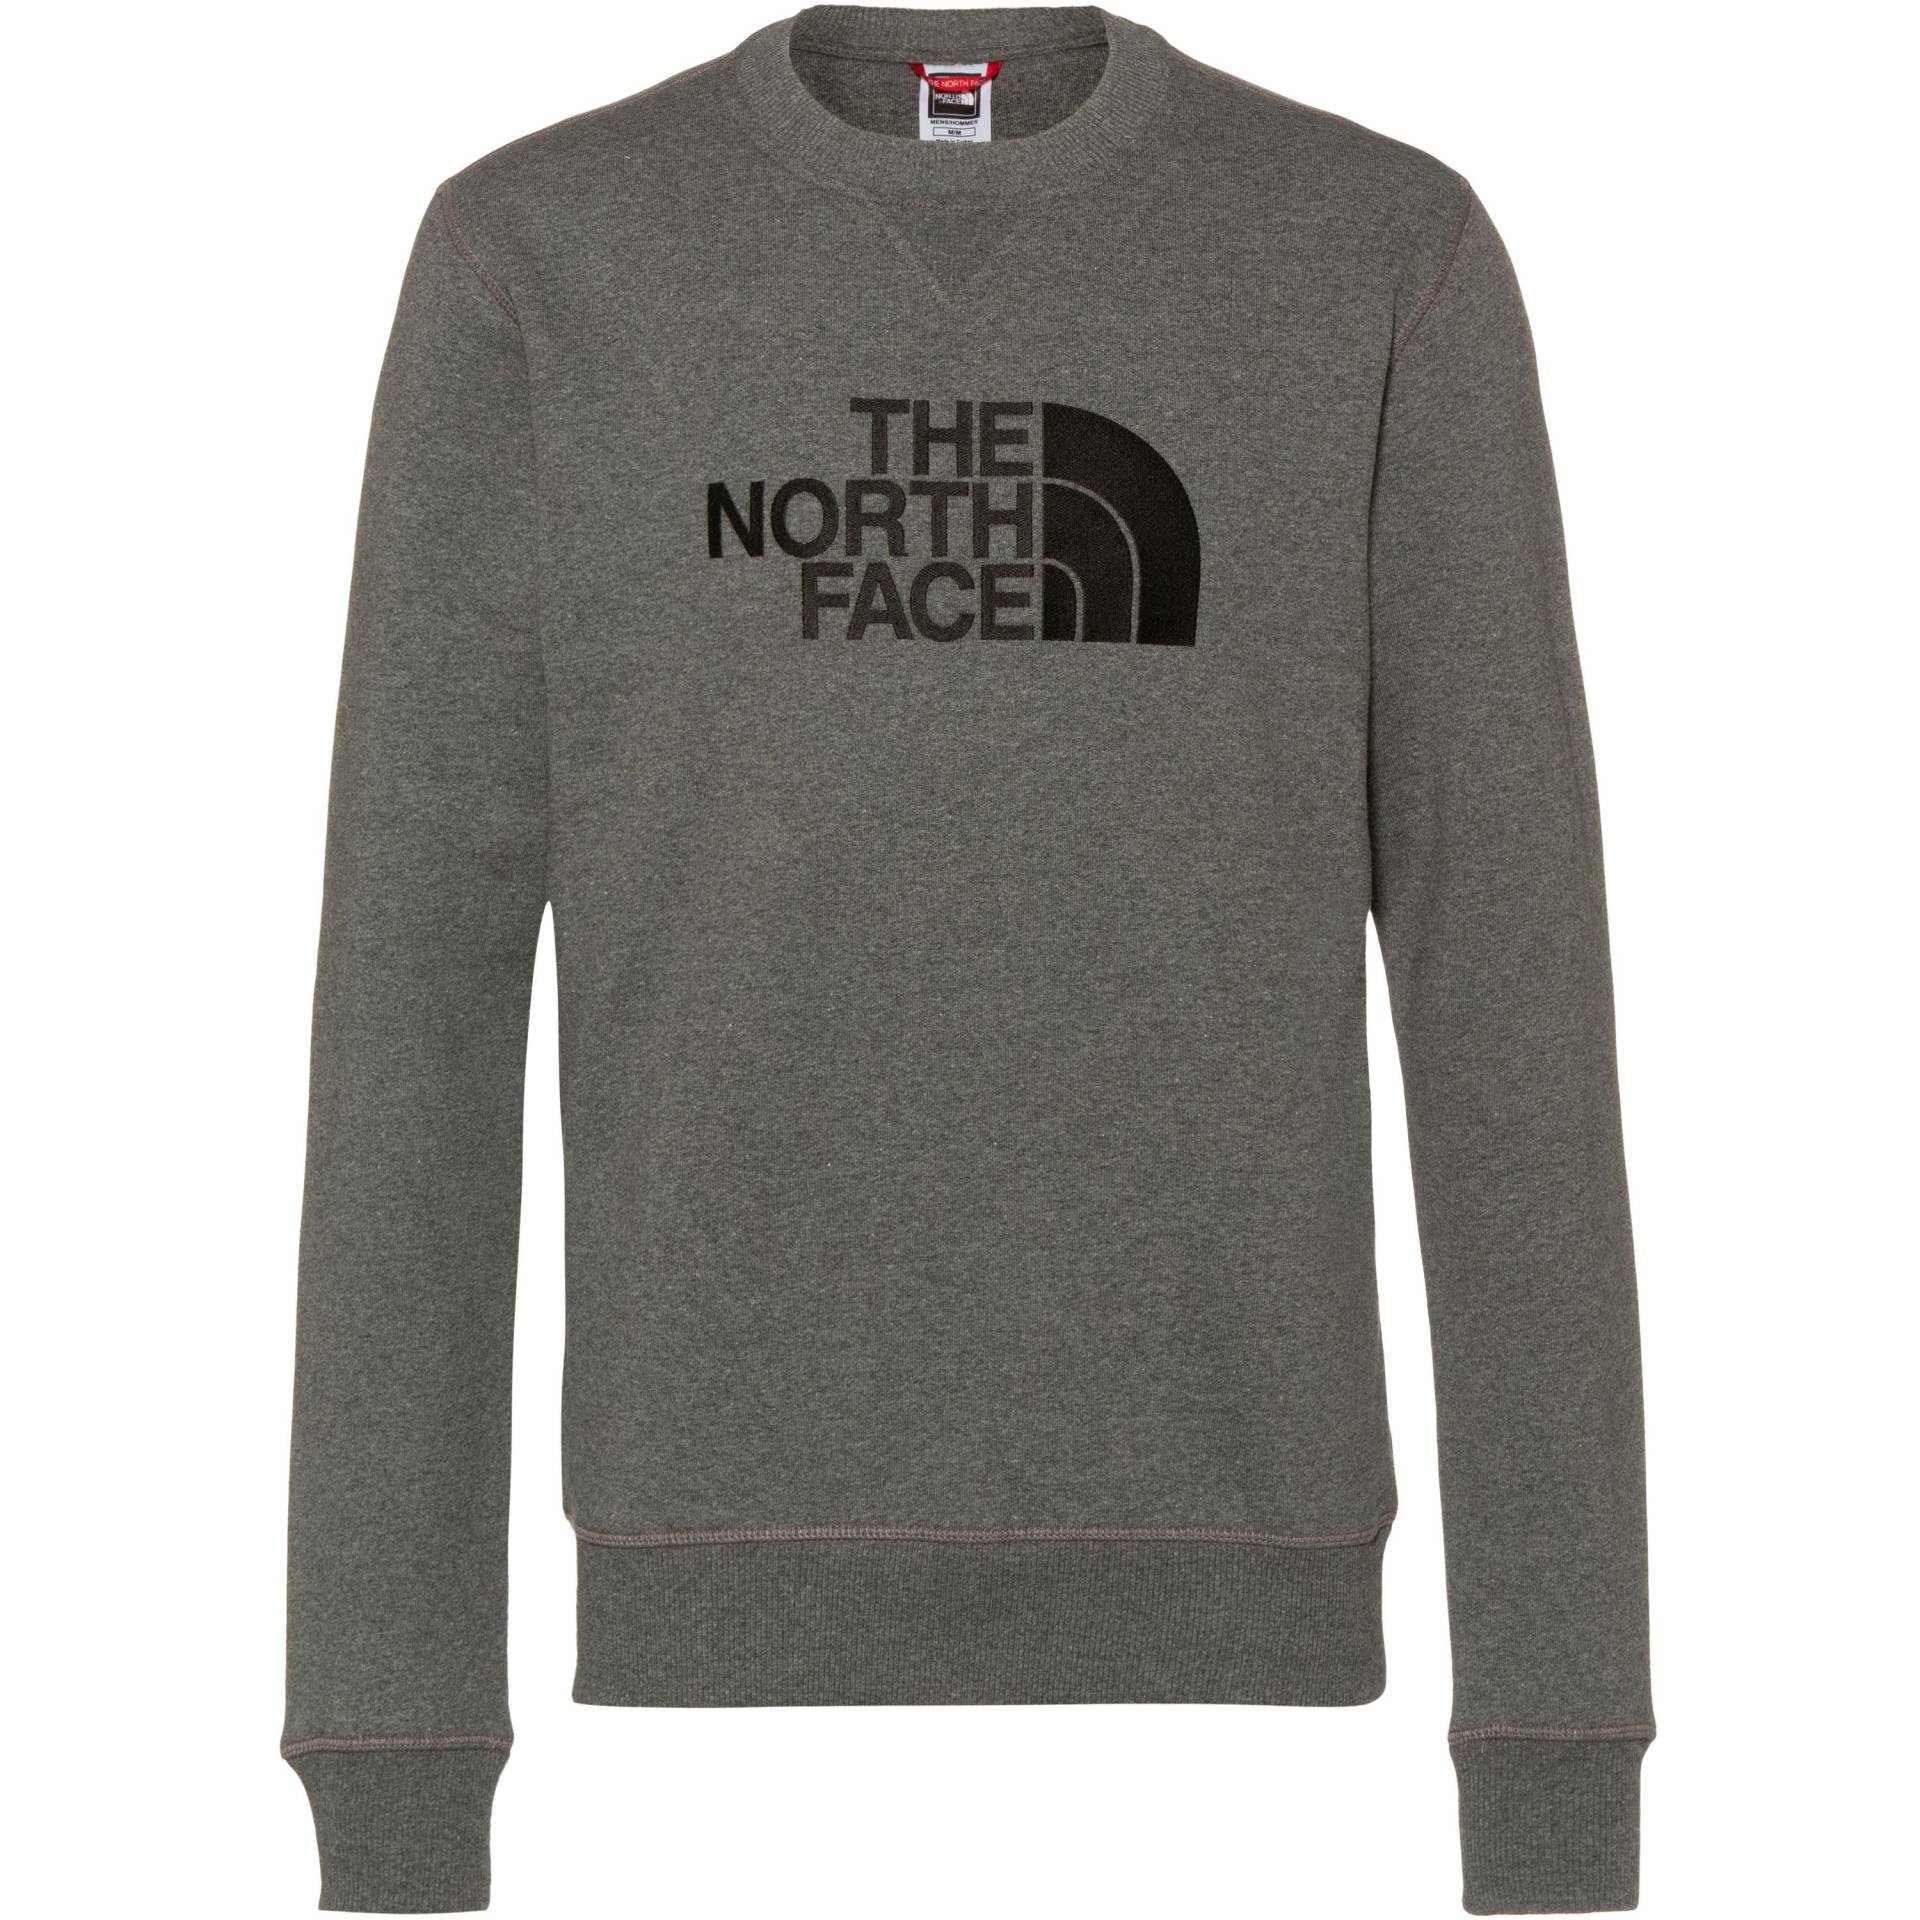 The North Face DREW PEAK Sweatshirt Herren von The North Face